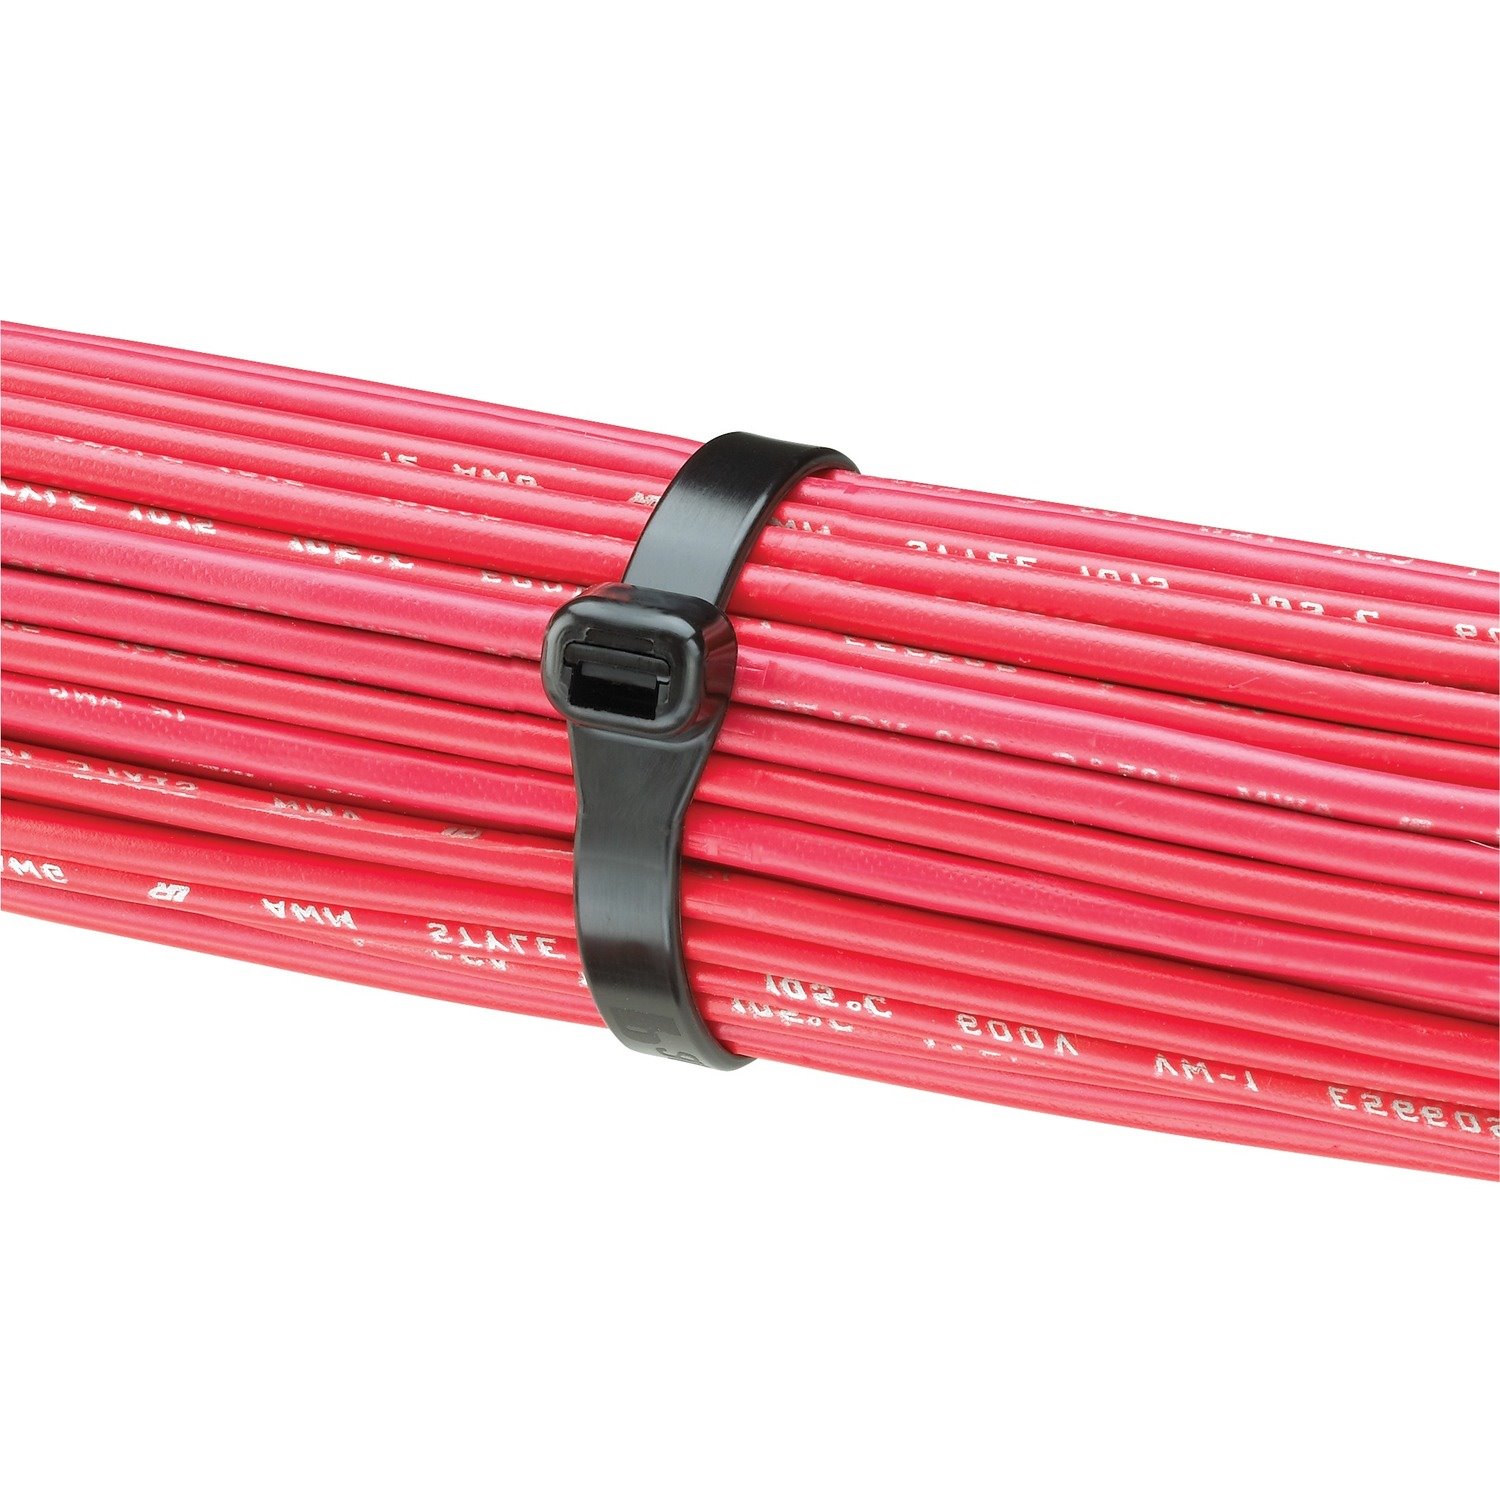 Panduit Super-Grip SG150I-M0 Cable Tie